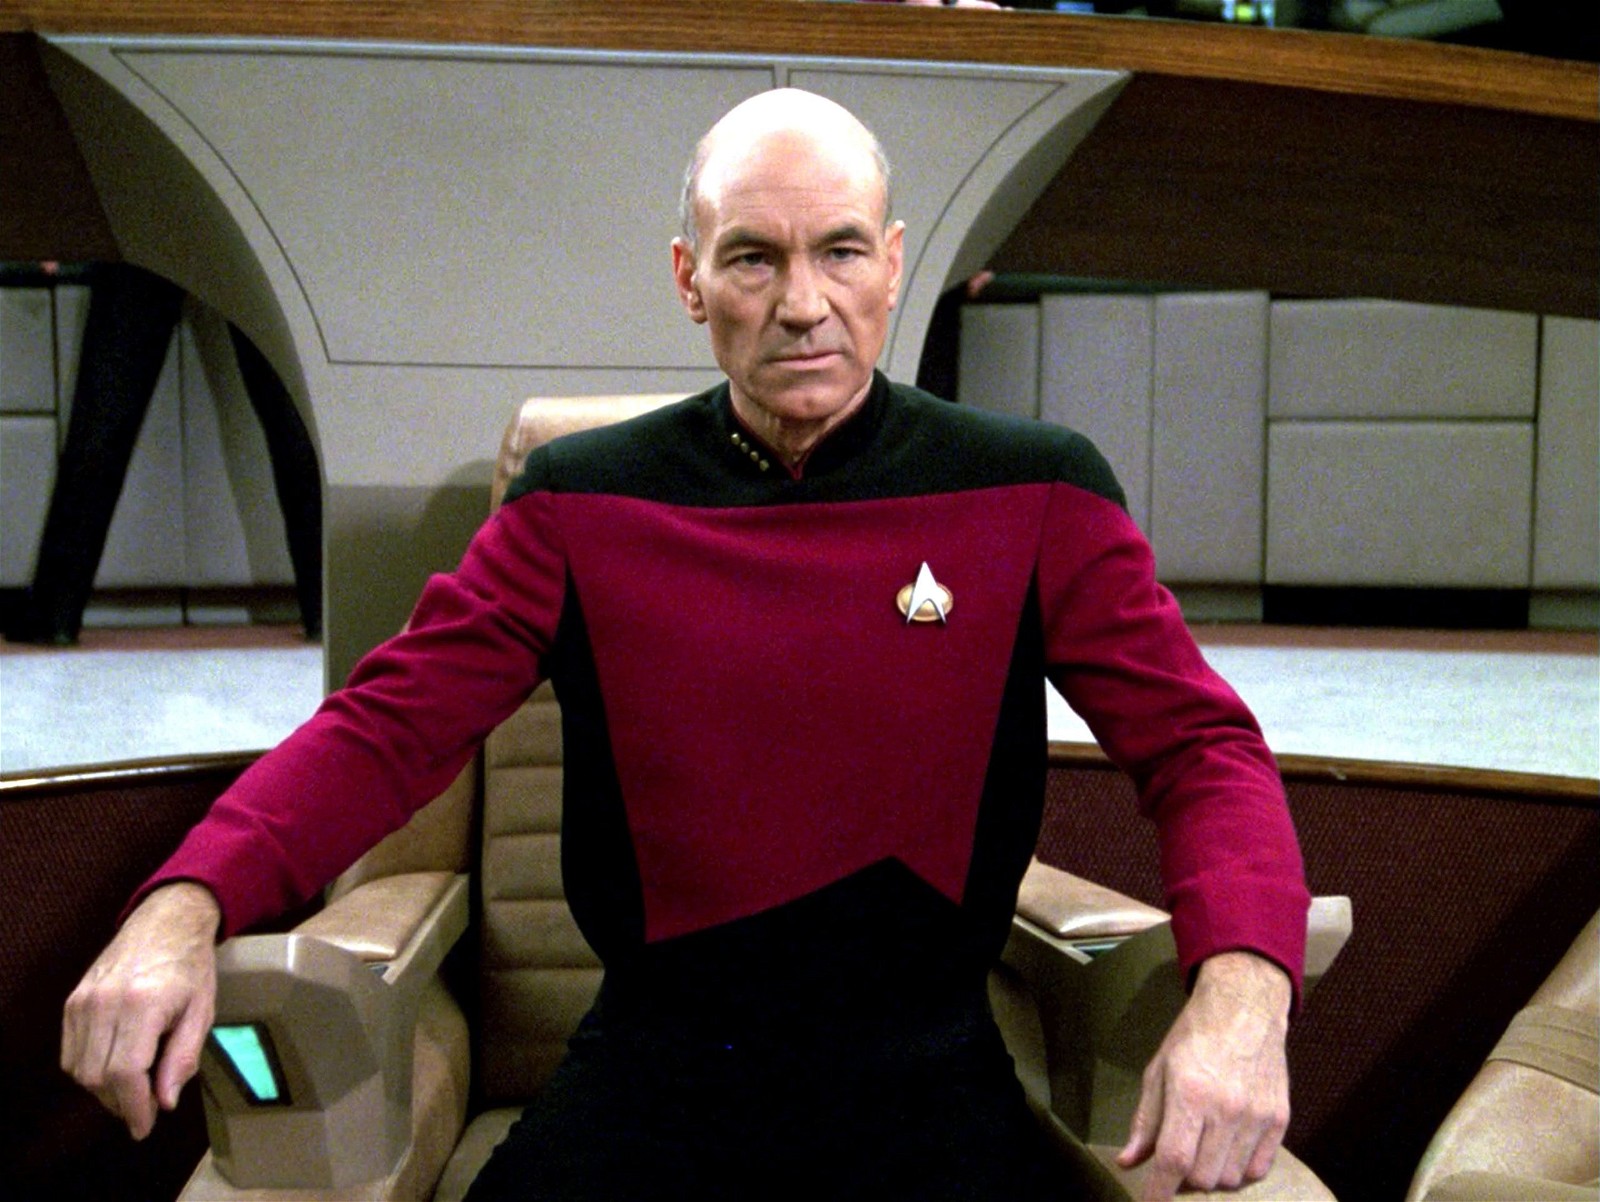 Sir Patrick Stewart in Star Trek: The Next Generation (1987-1994).